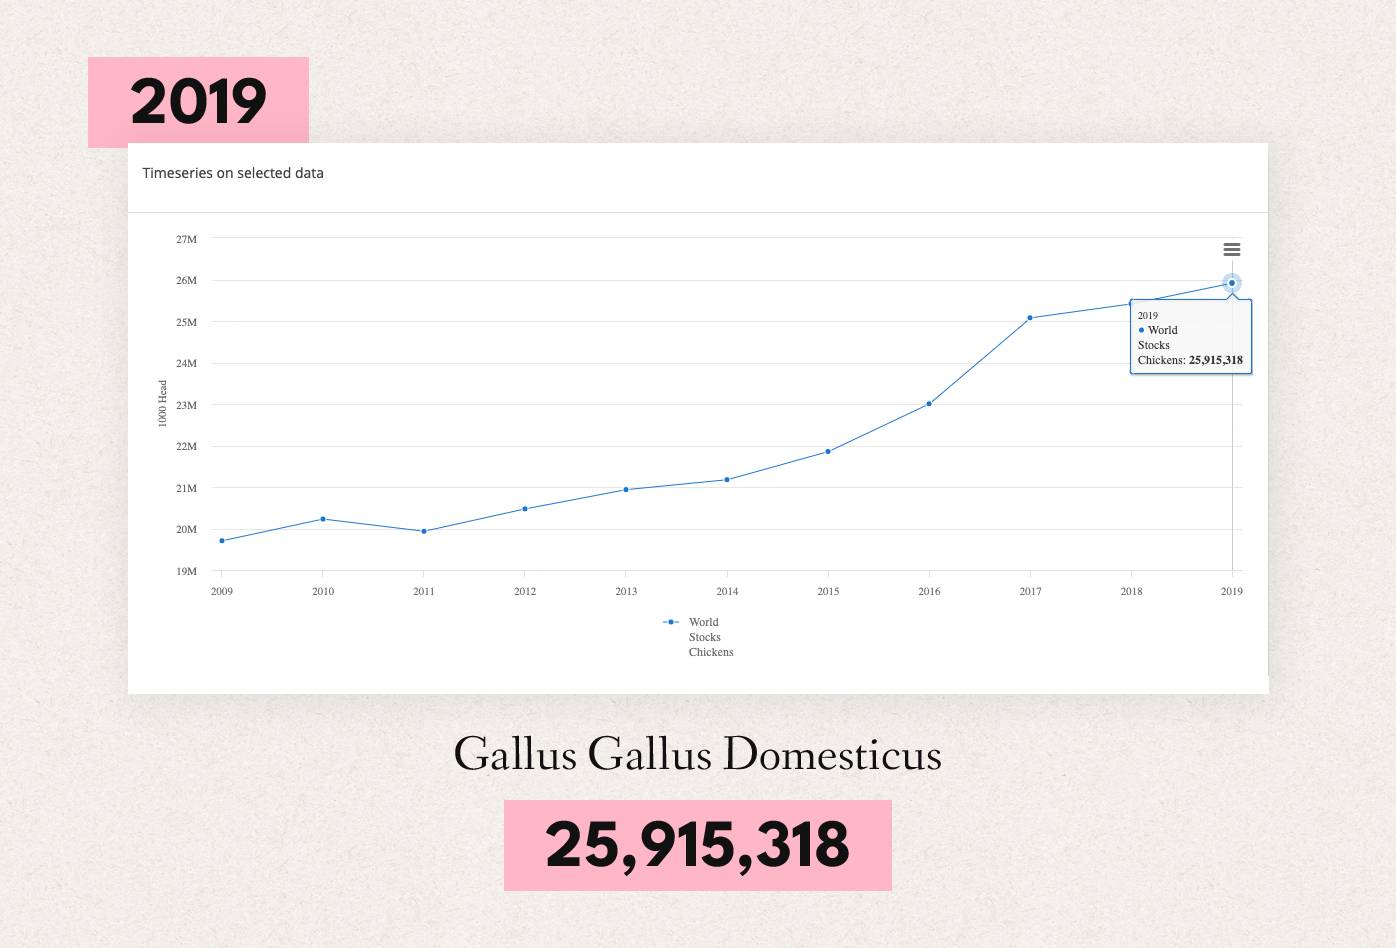 Población mundial de Gallus Gallus Domesticus en 2019